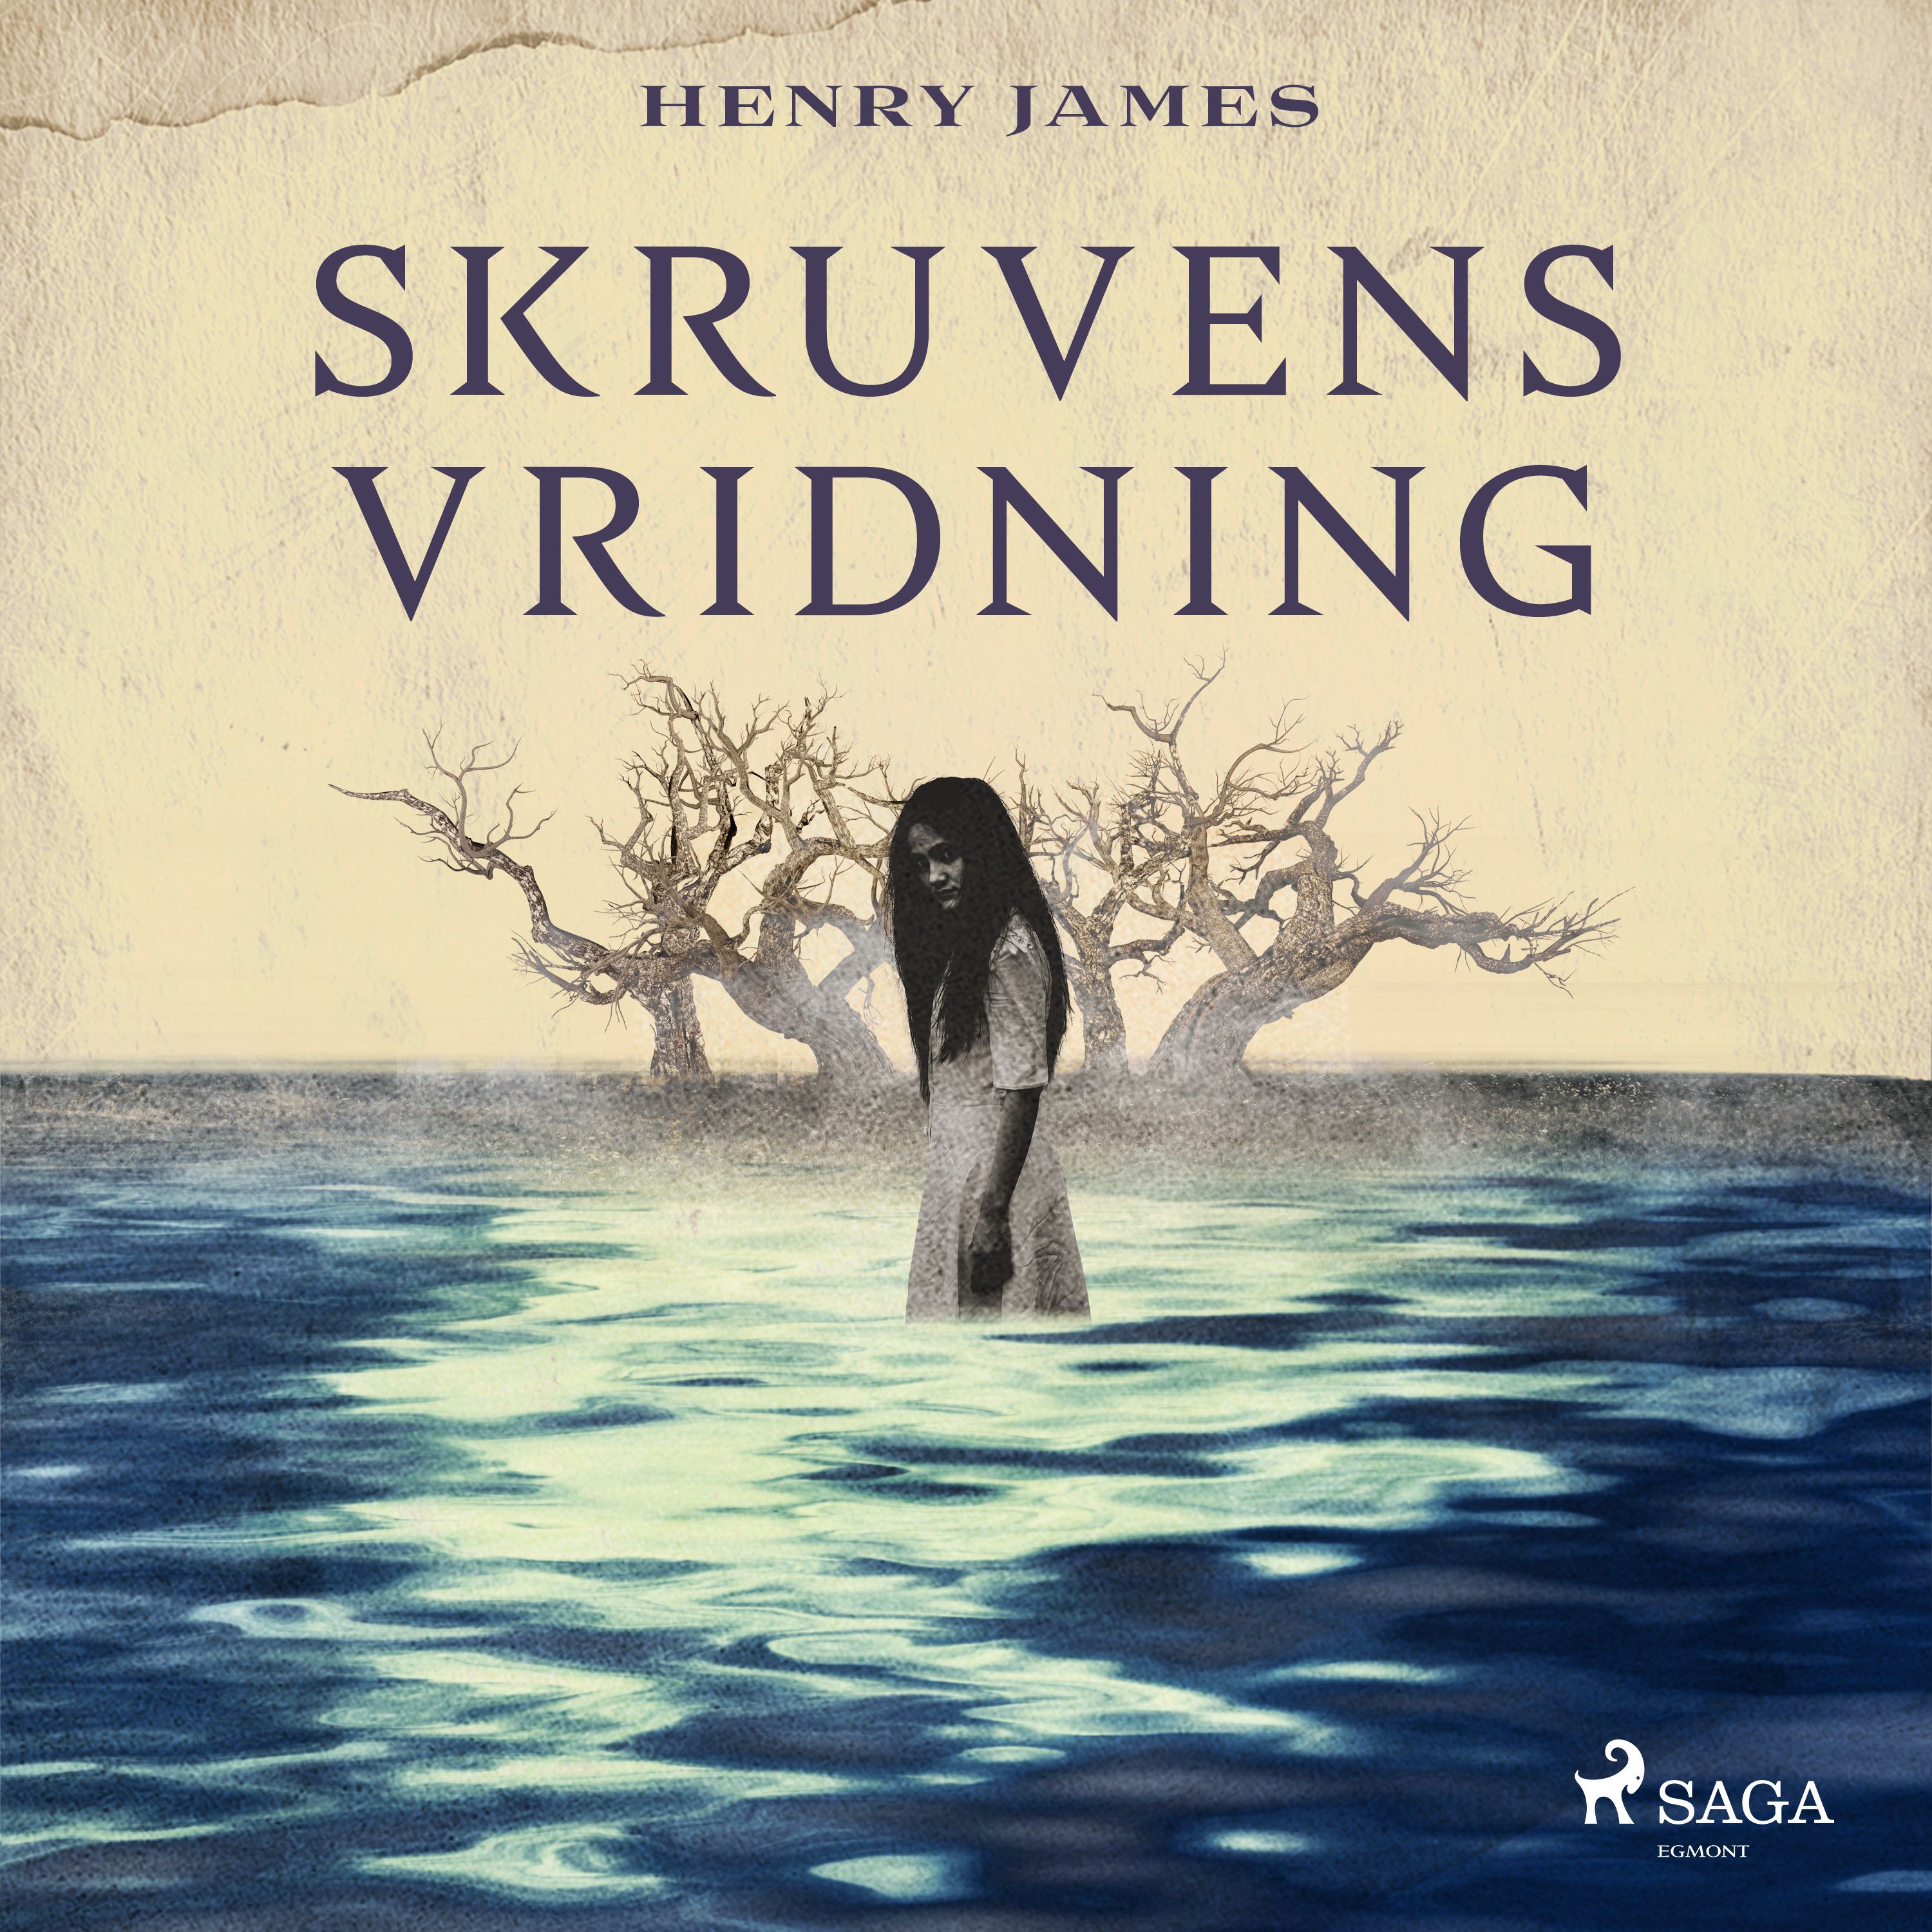 Skruvens vridning, ljudbok av Henry James